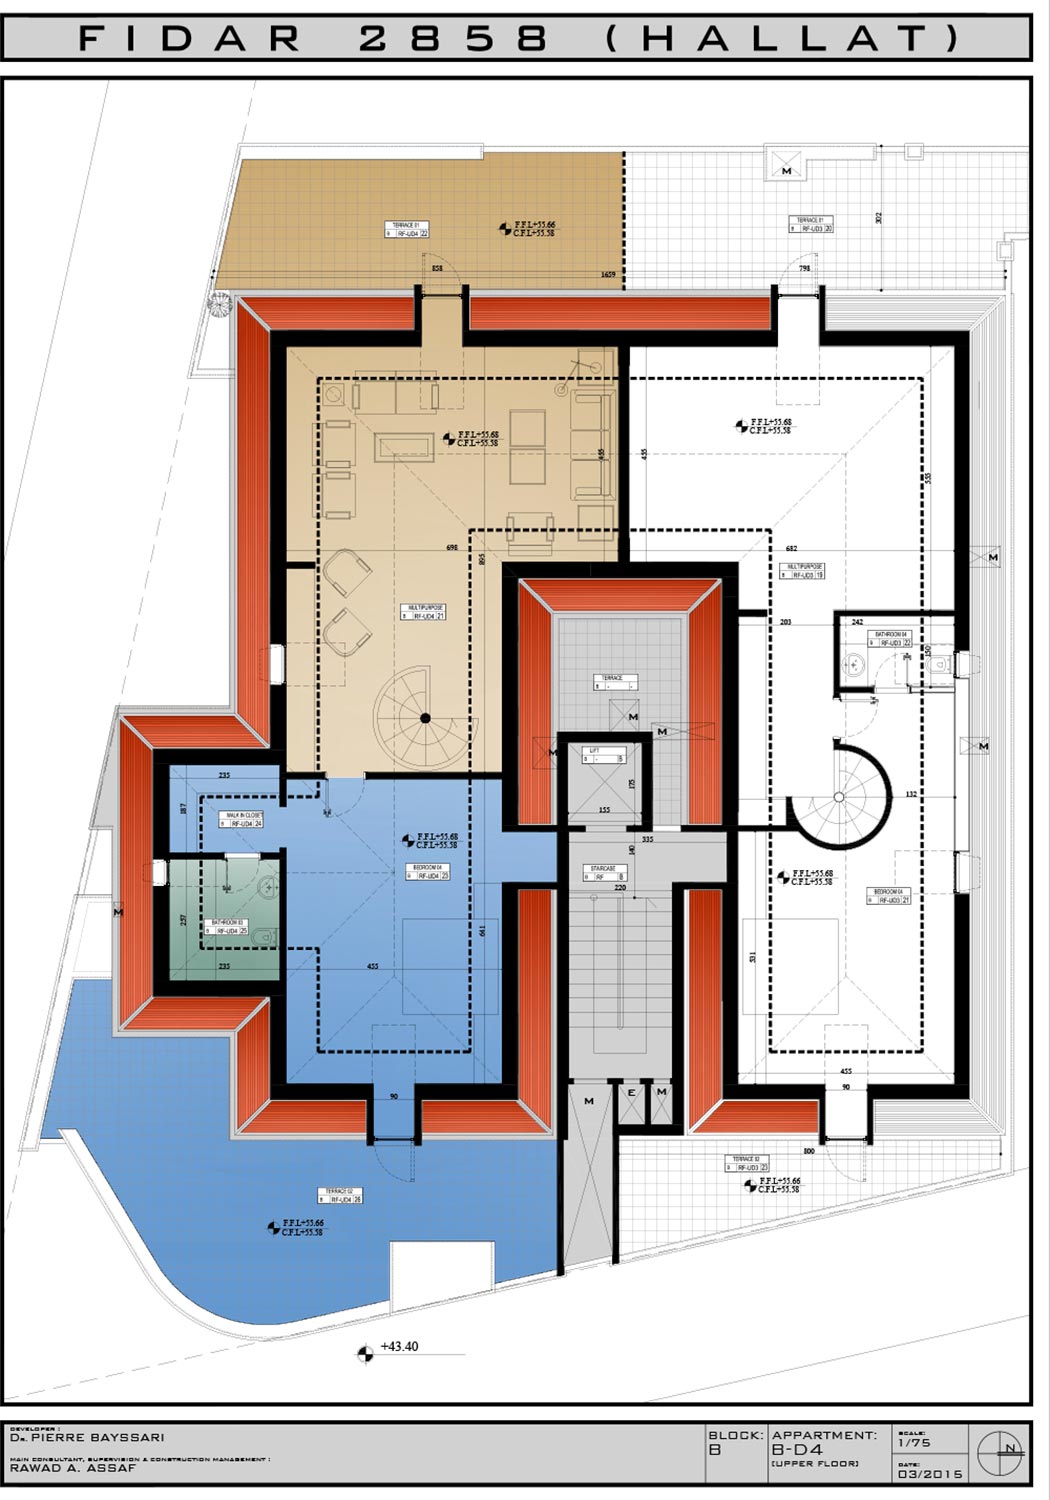 RL-2137 Duplex for Sale in Jbeil, Fidar - $ 703,000